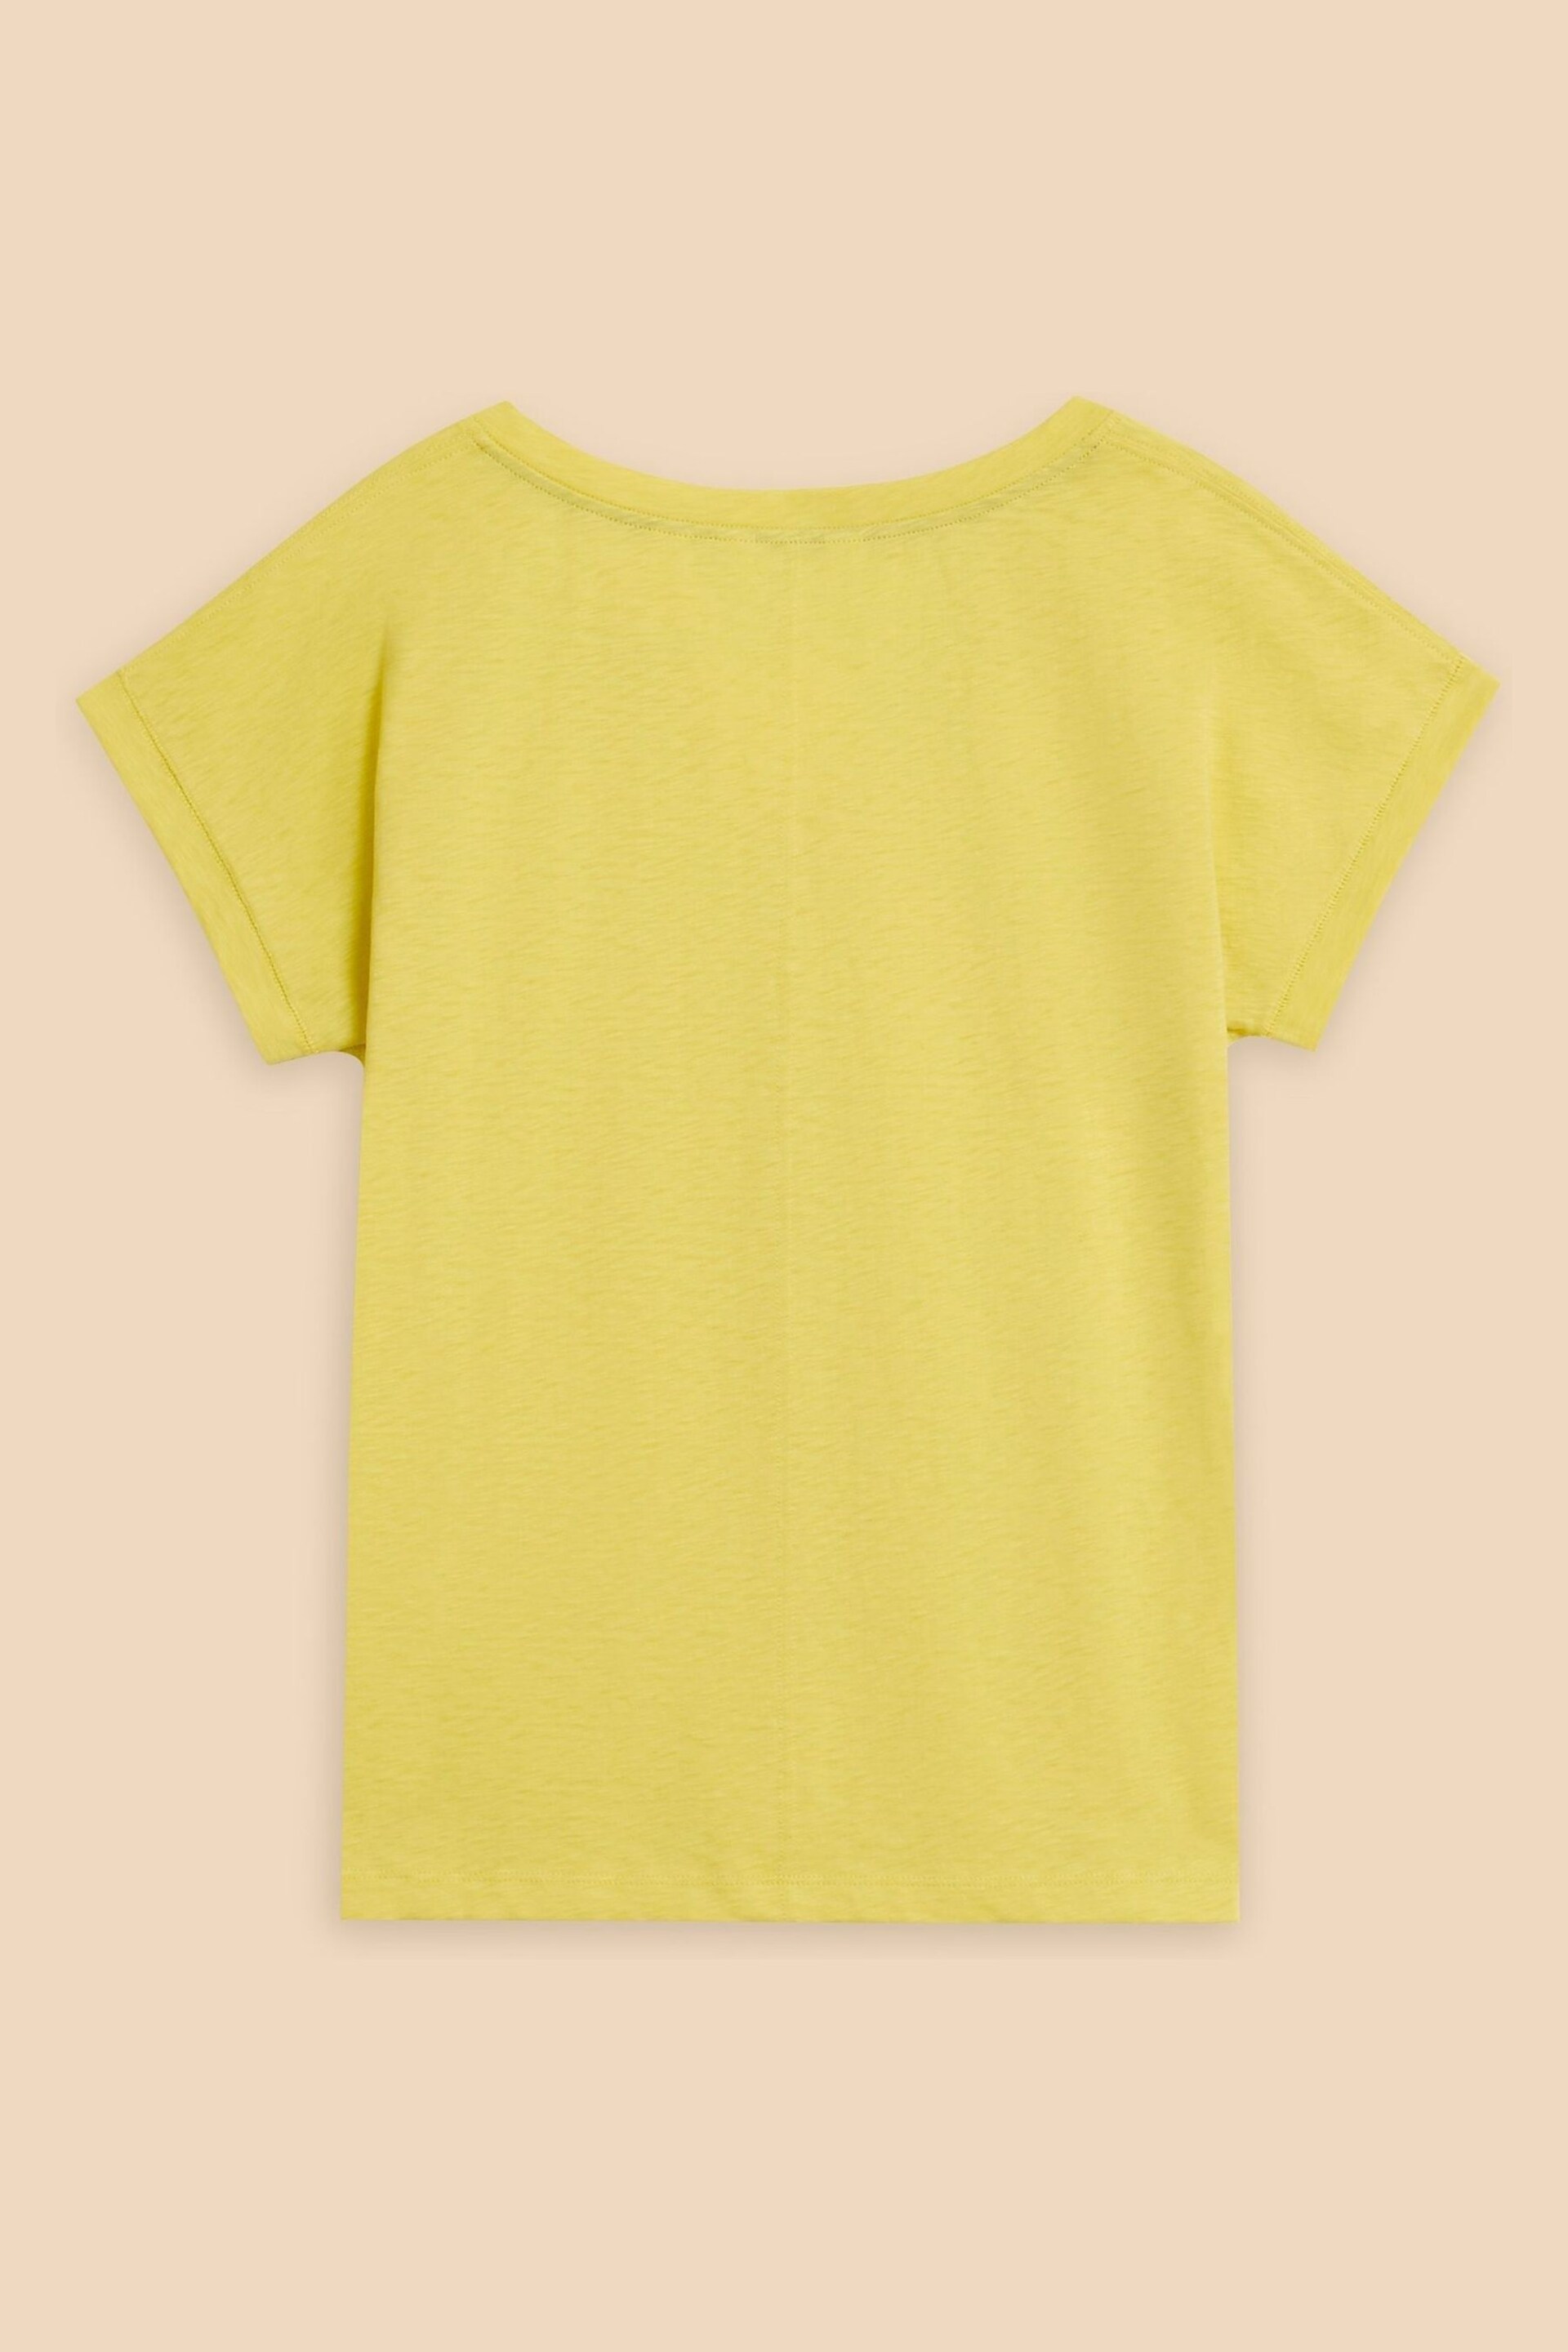 White Stuff Yellow Nelly Notch Neck T-Shirt - Image 7 of 8